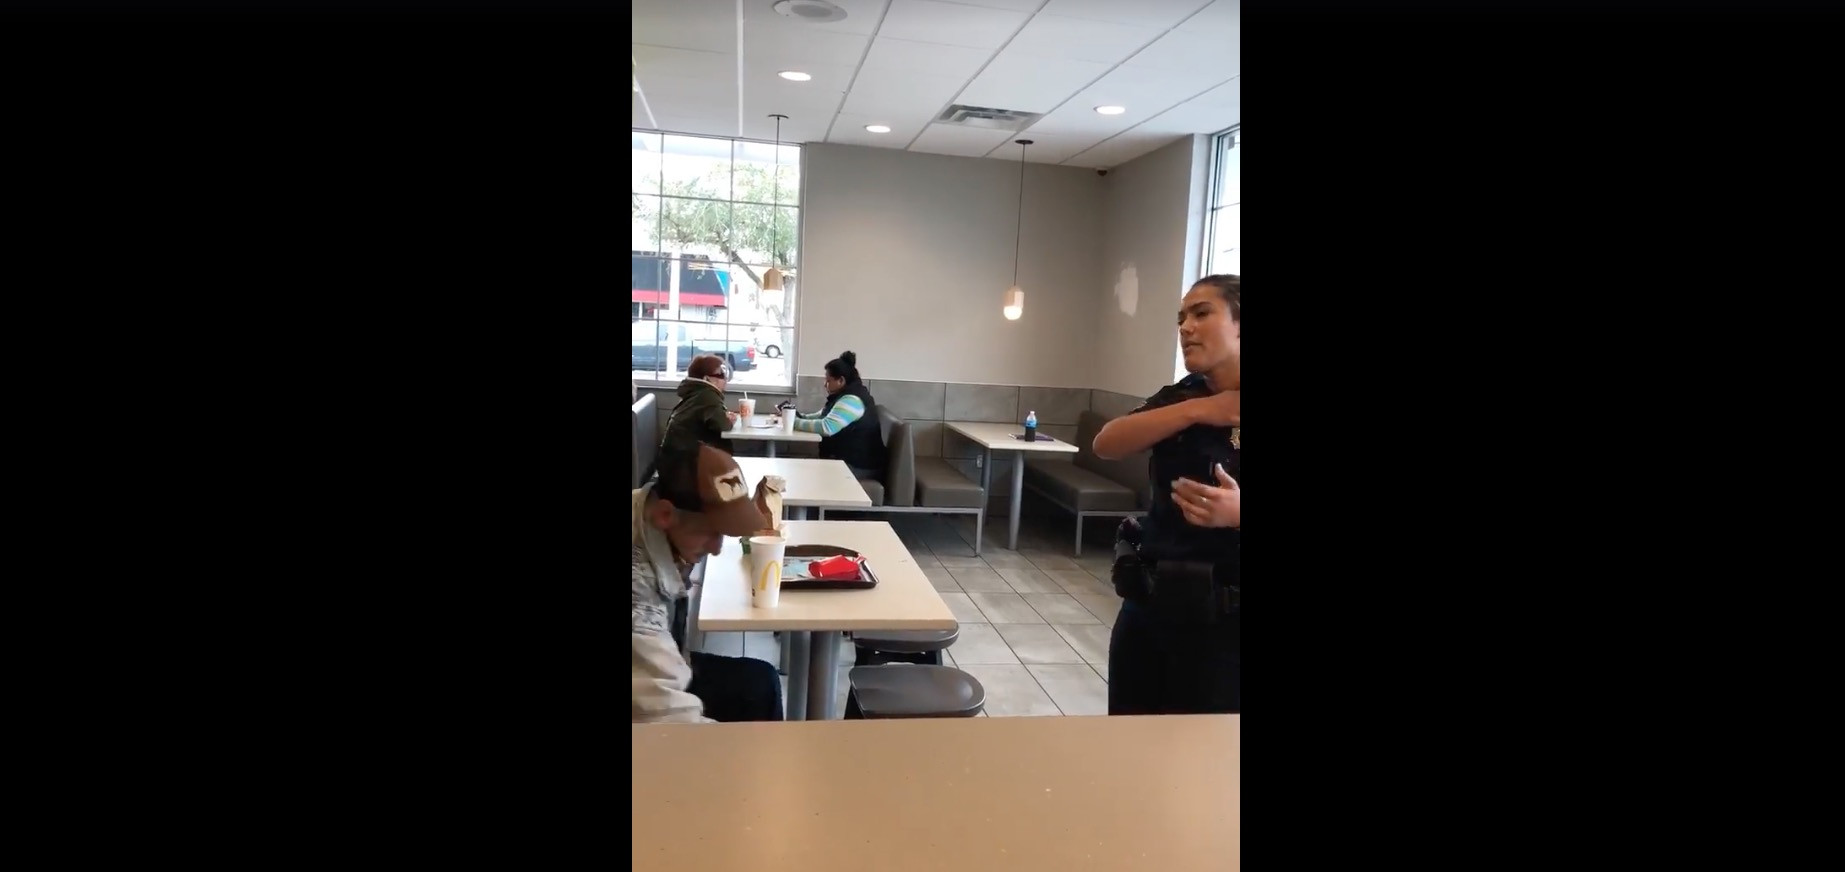 ΗΠΑ: Η αστυνομία διώχνει άστεγο από  McDonald’s, ενώ είχε πληρωθεί το γεύμα του [Βίντεο]